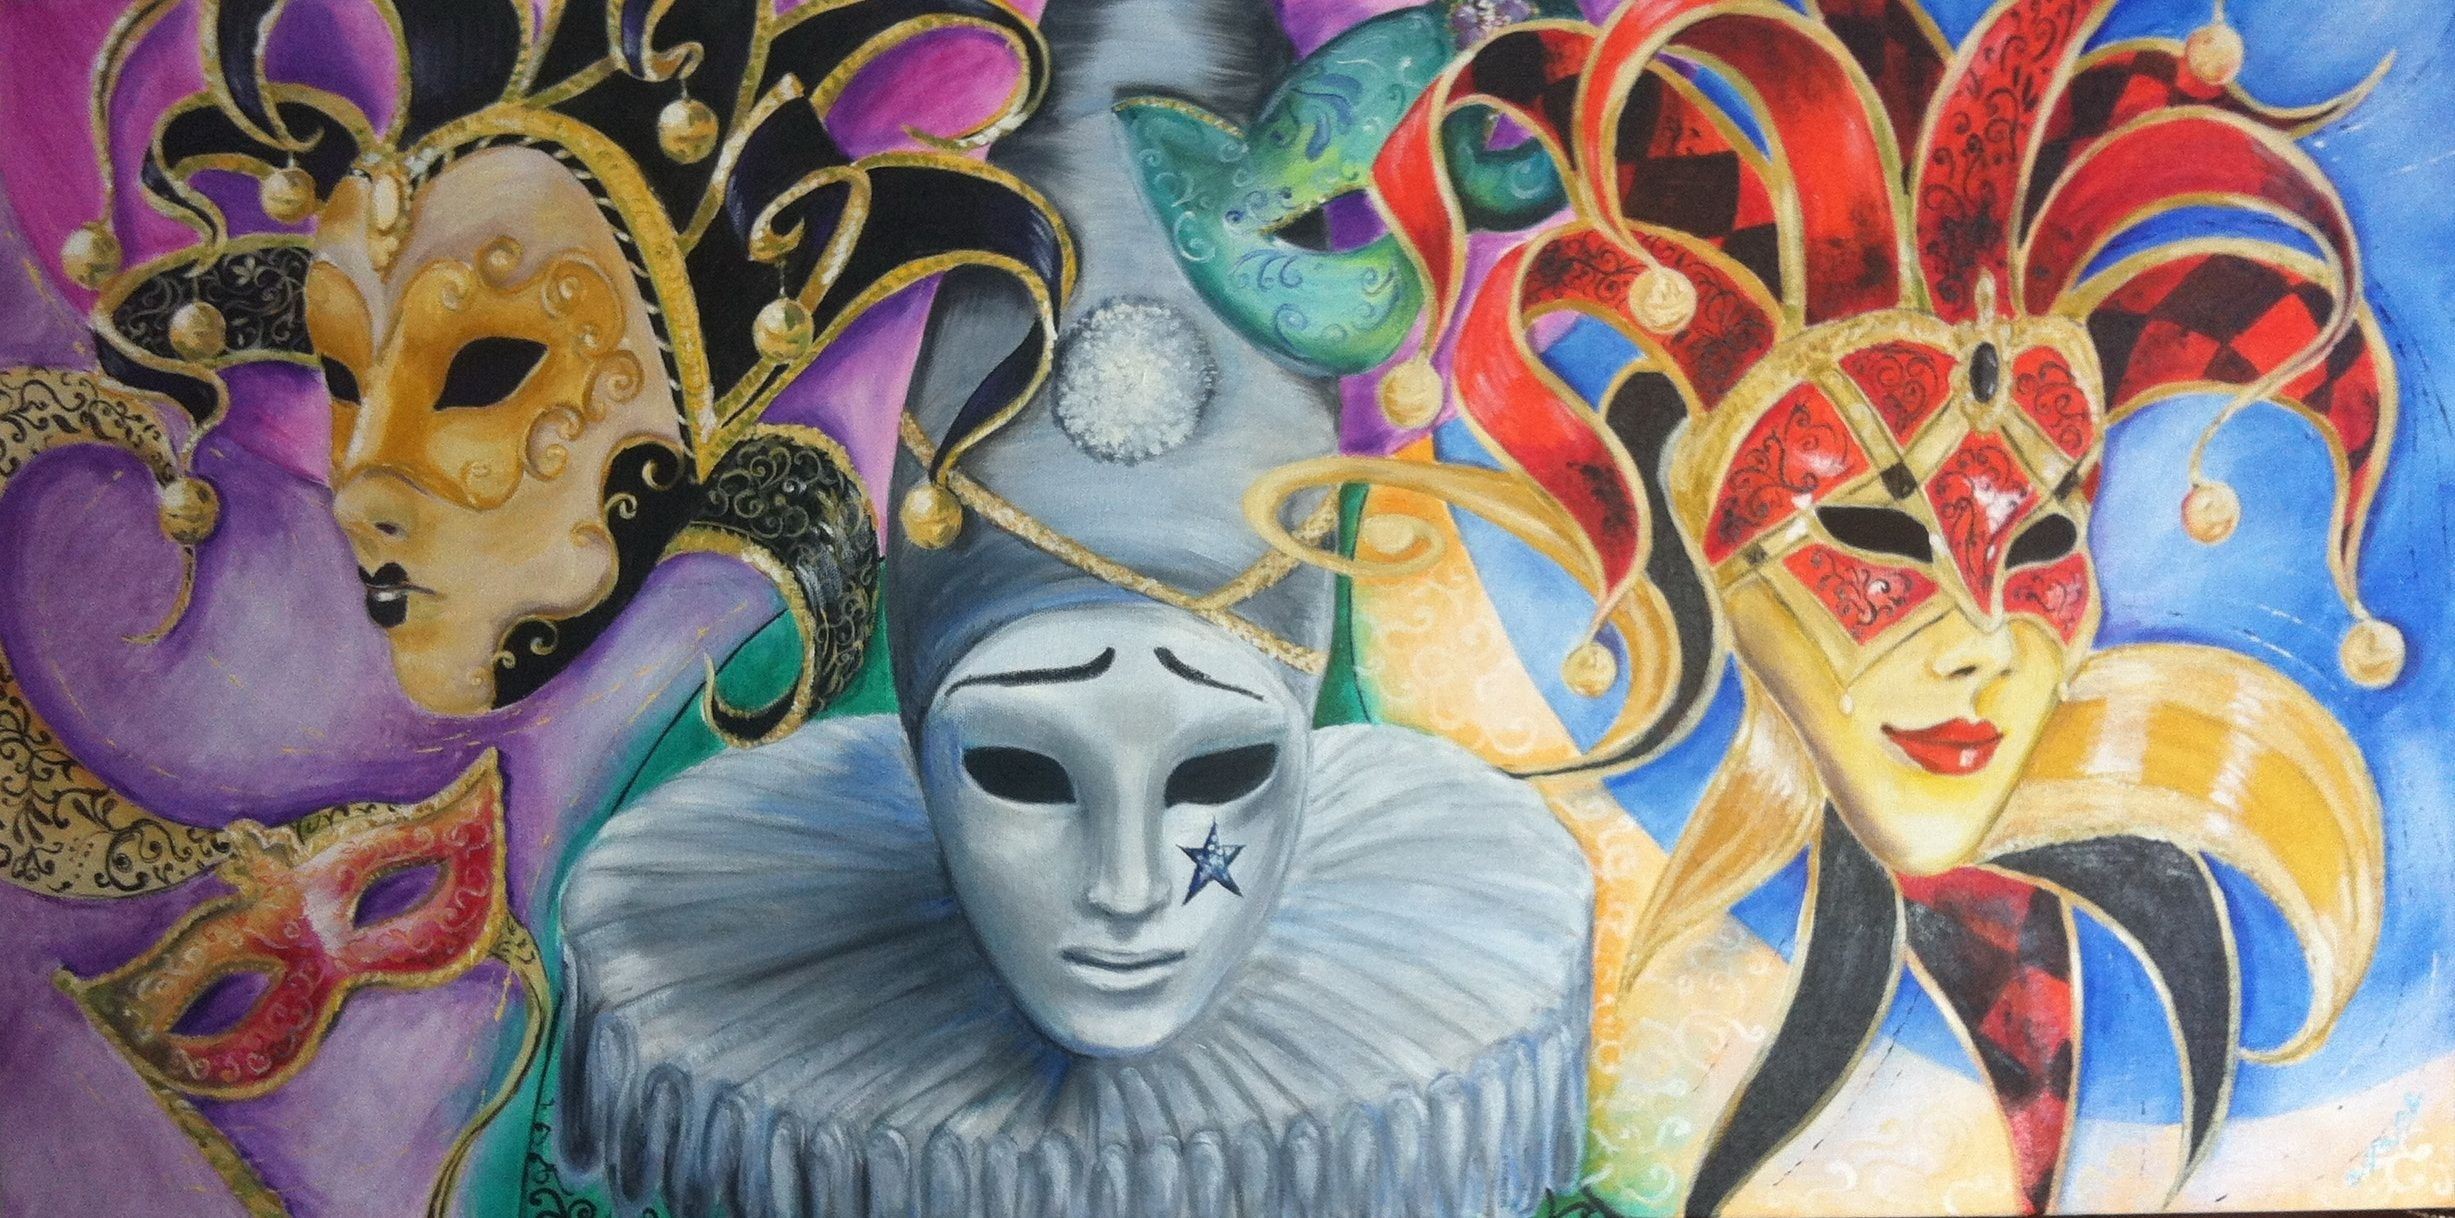 Изо театральные маски. Карнавал в изобразительном искусстве Венецианский карнавал. Карнавал Венеция кубизм. Венецианская маска Маттачино.